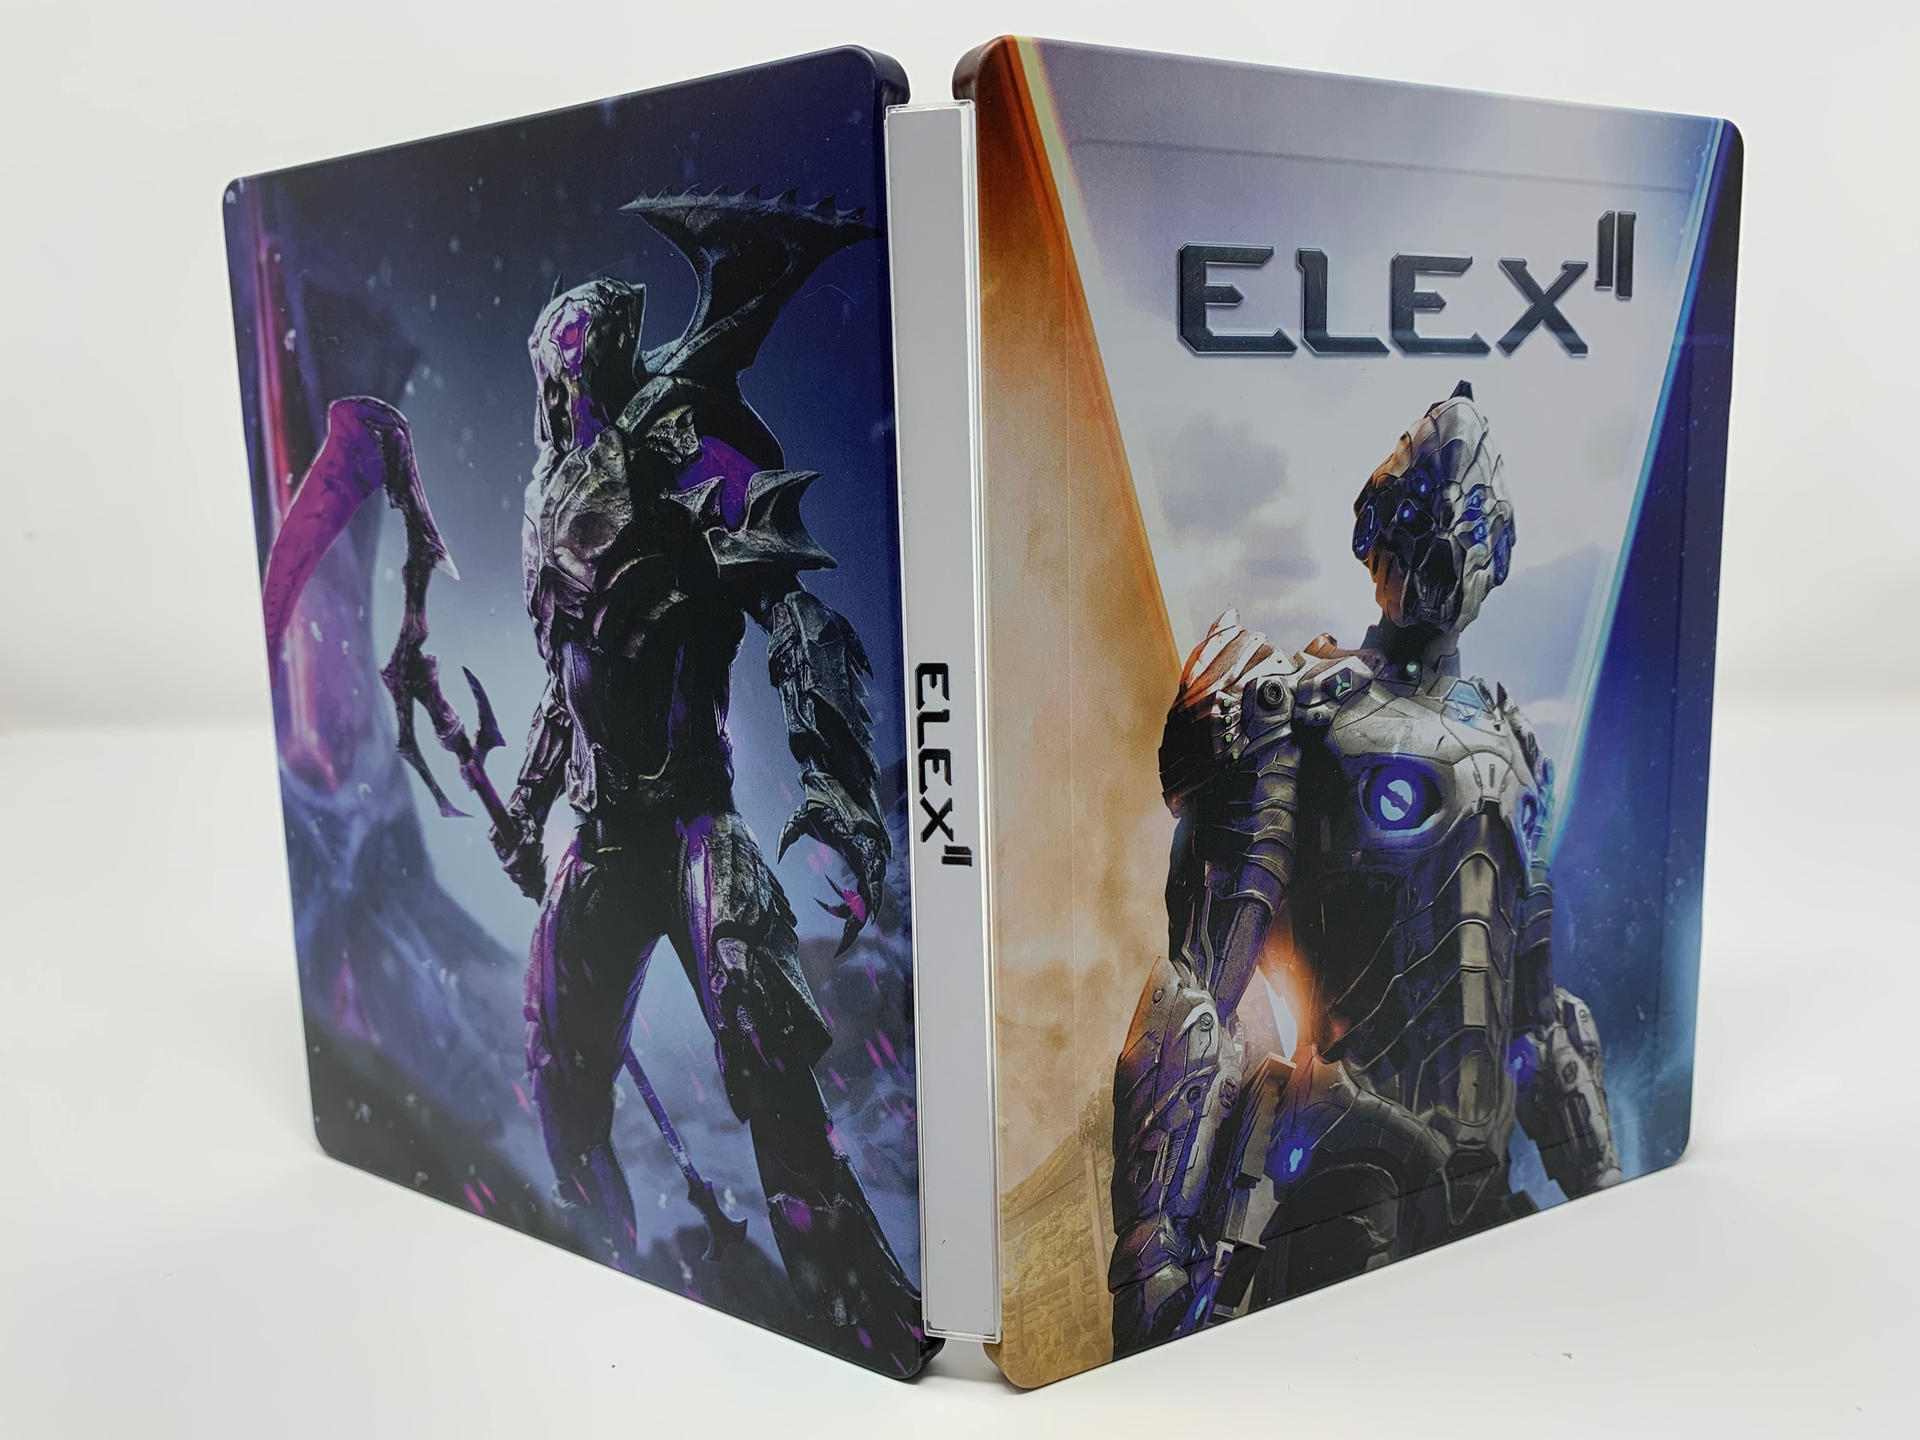 ELEX II - Day 1 Steelbook - Edition [PlayStation 4